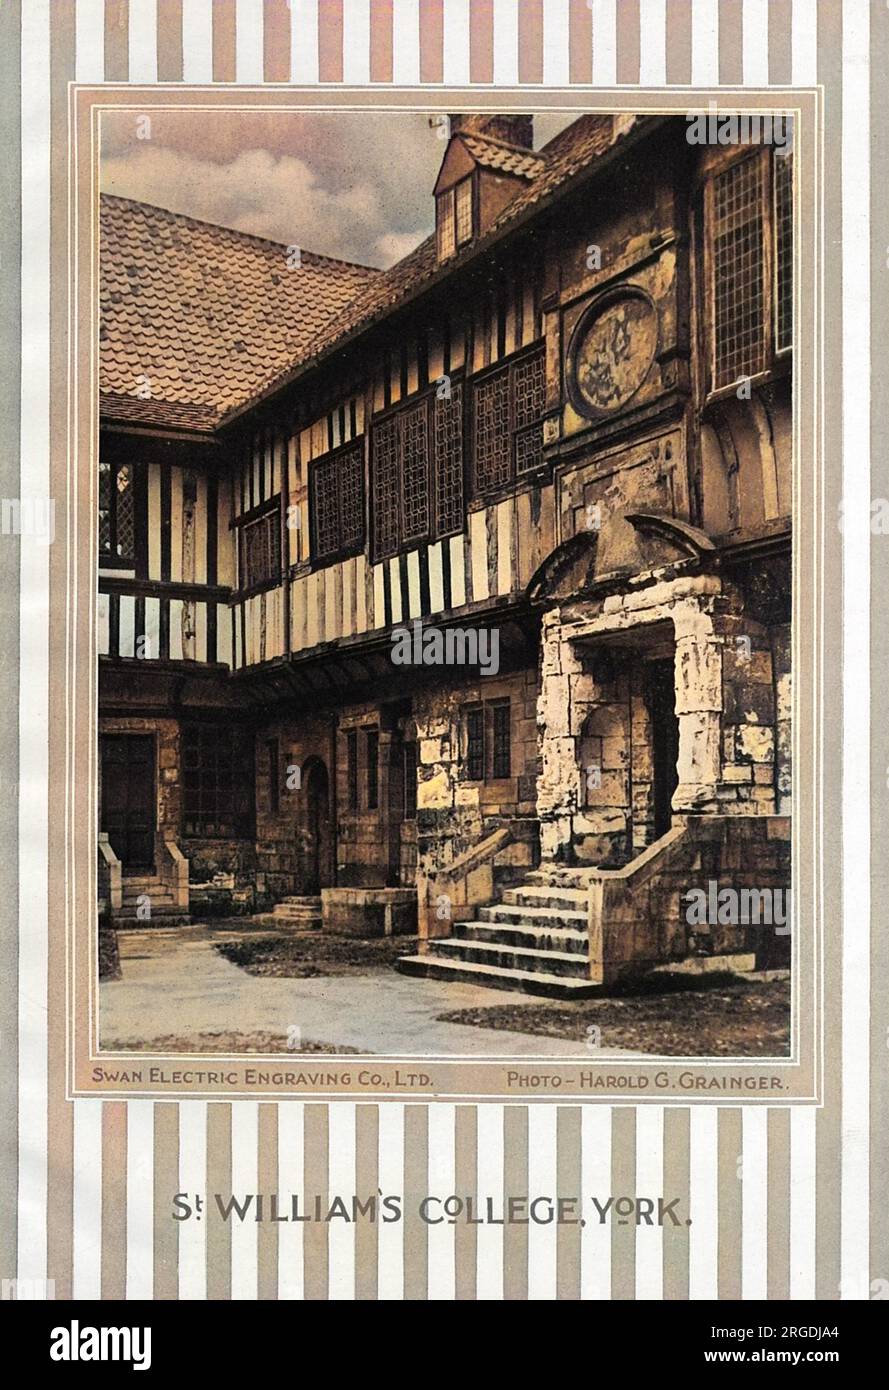 St William's College, York - un bel exemple de bâtiment tudor. Banque D'Images